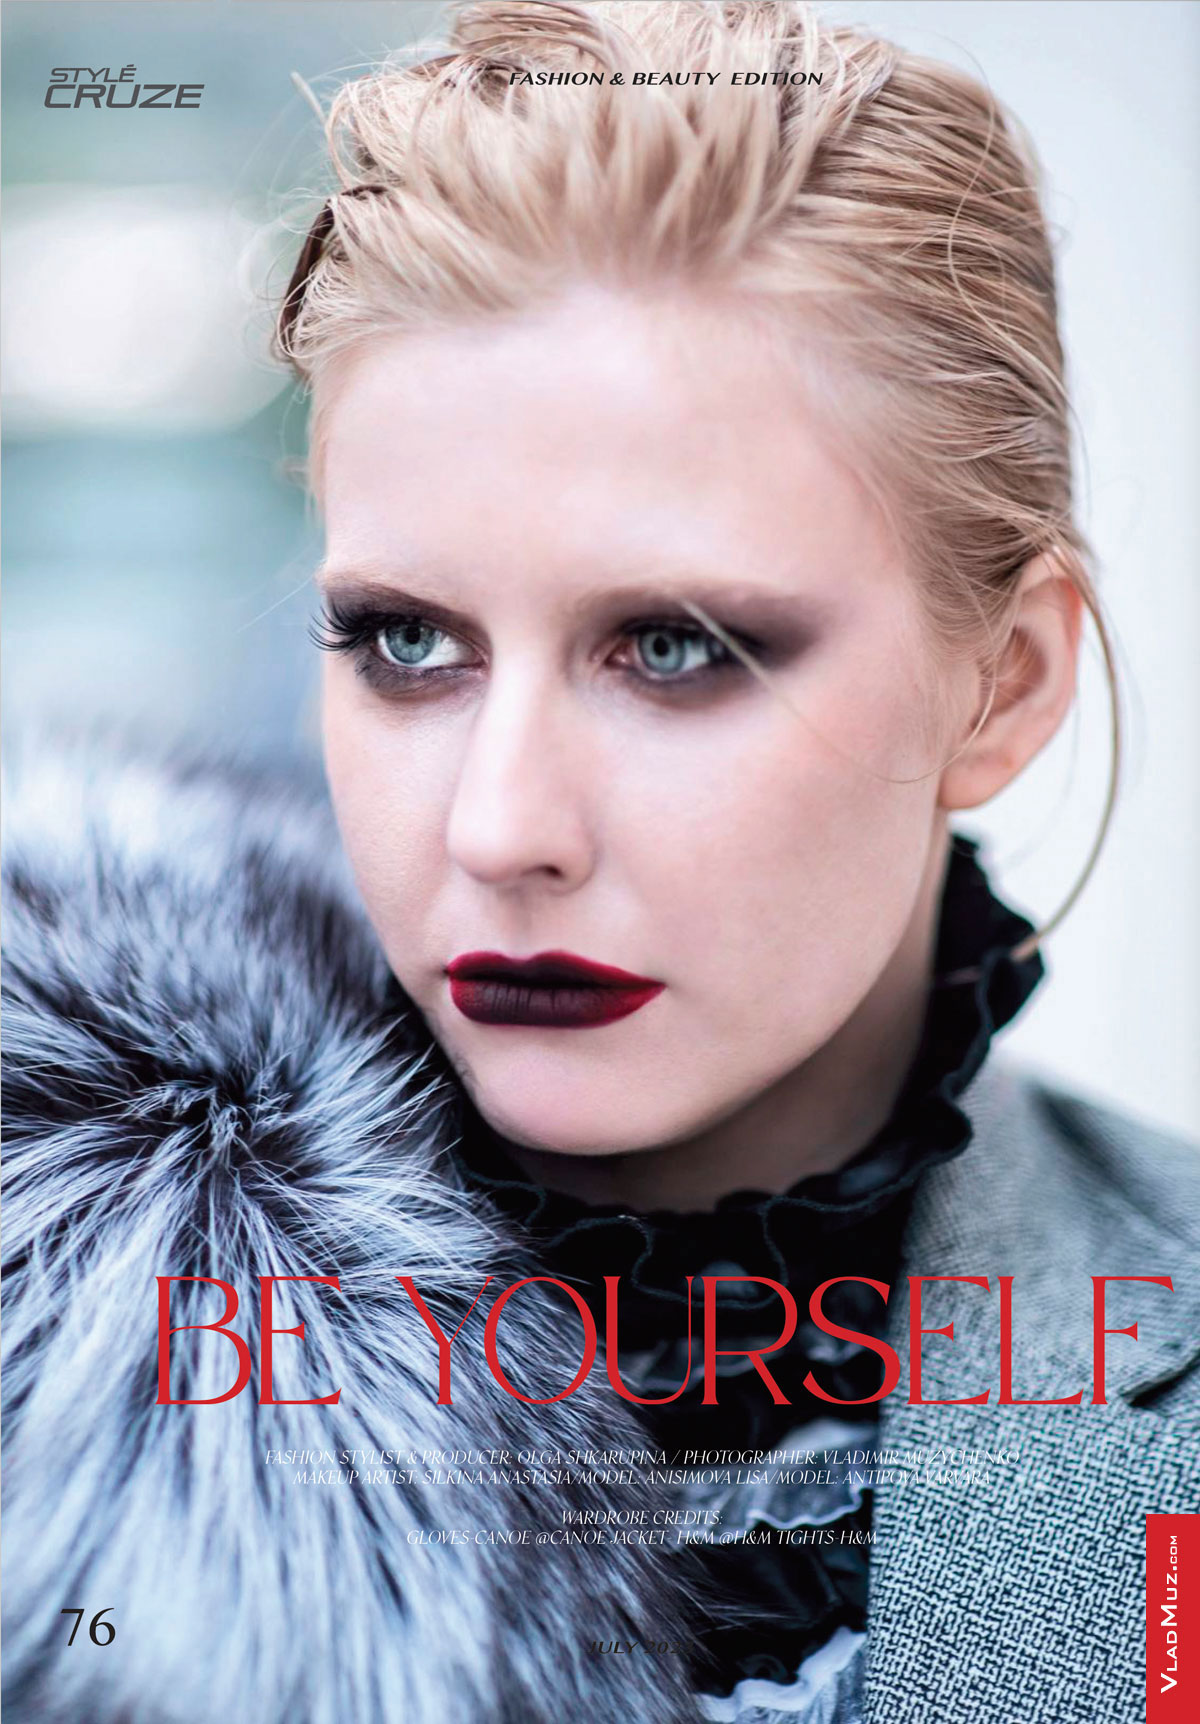 Фото девушки-модели в начале модной серии фотографий в журнале Style Cruze Magazine под заголовком “Be Yourself” — «Будь собой»